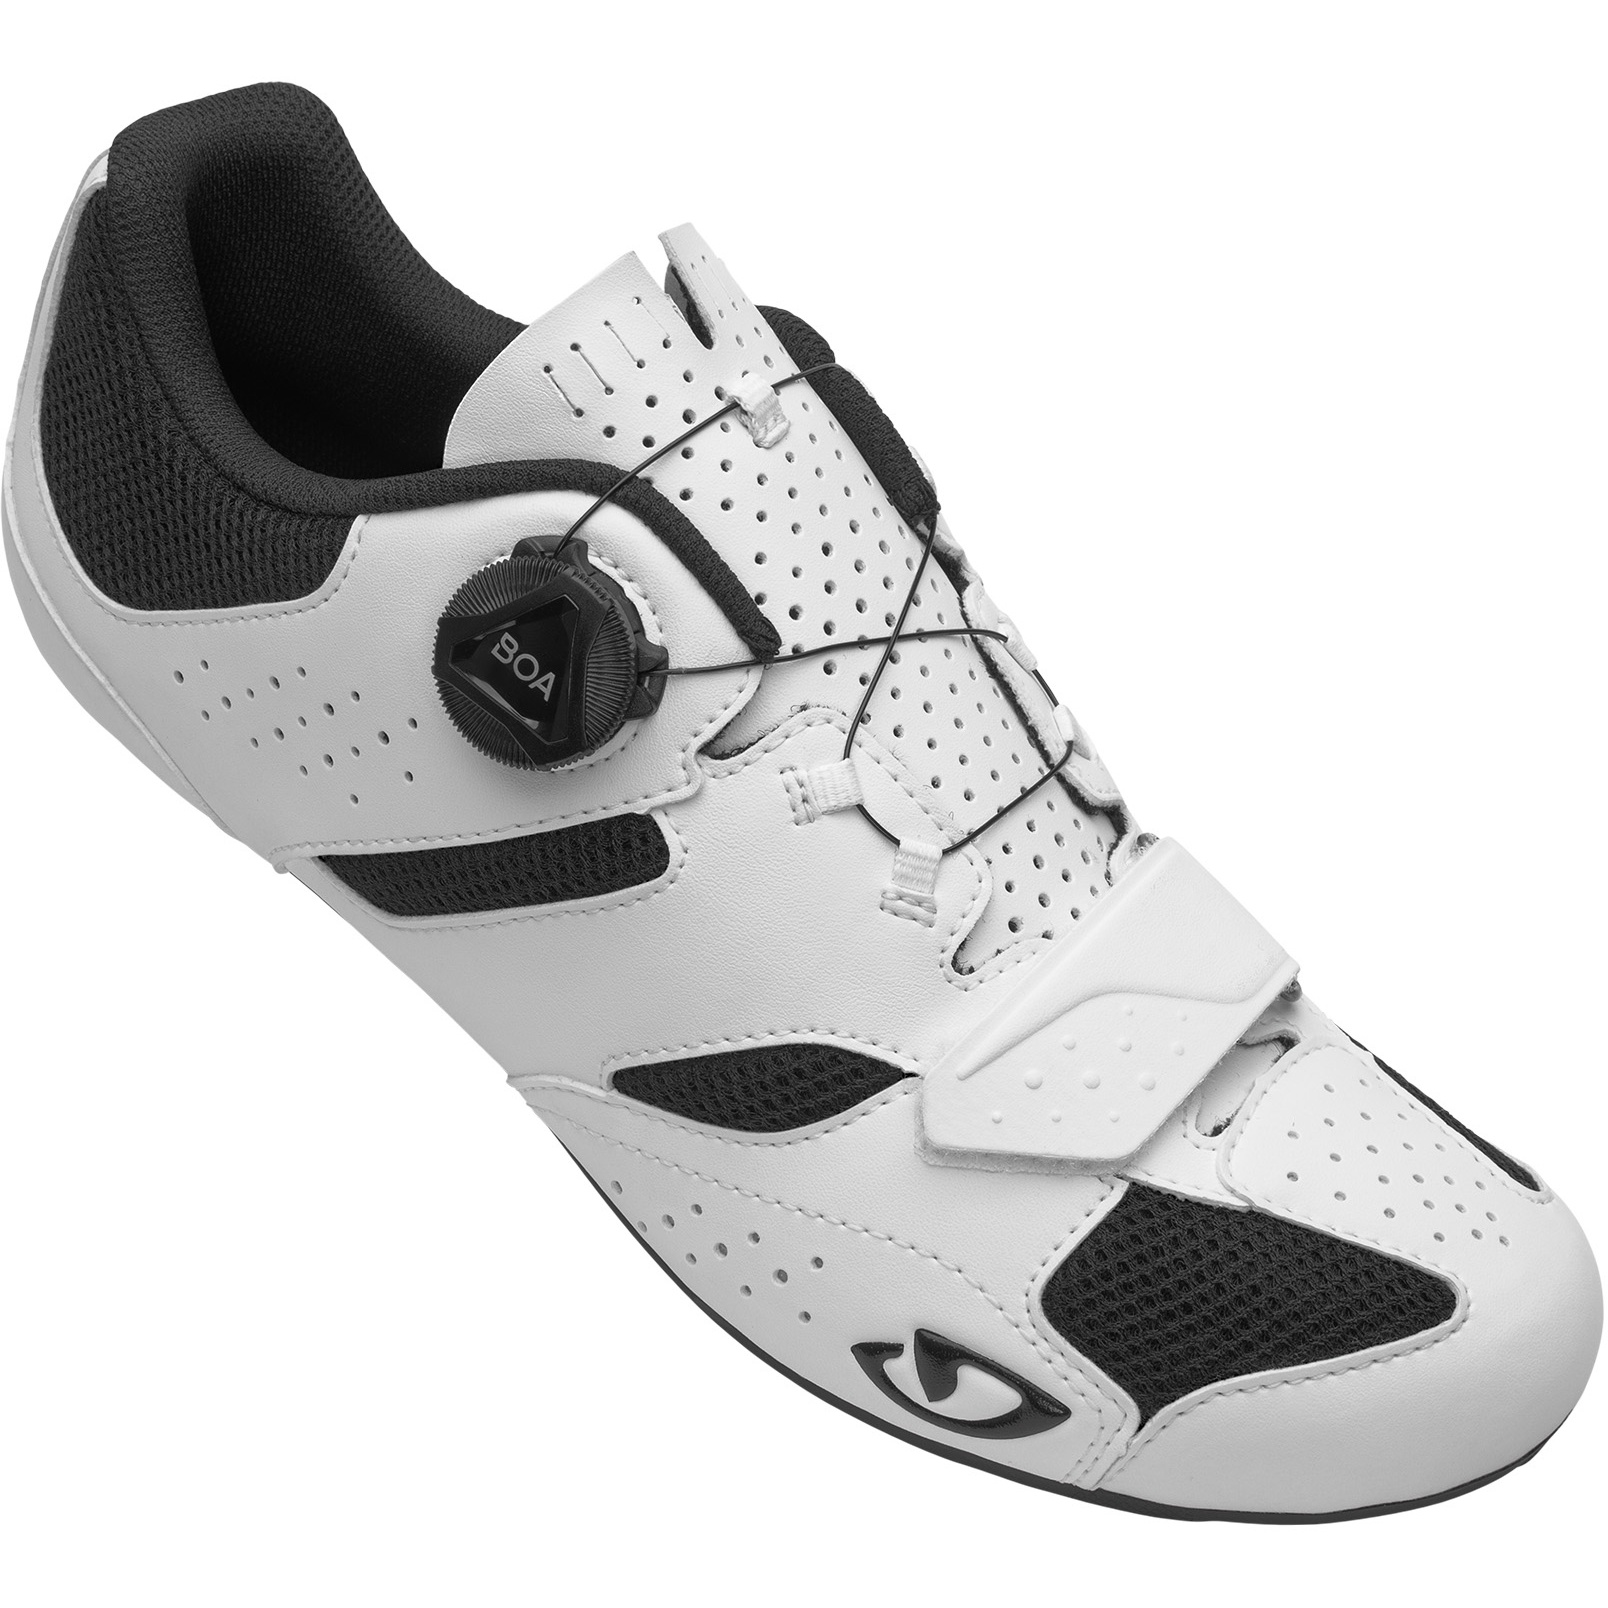 Produktbild von Giro Savix II Rennradschuhe - weiß